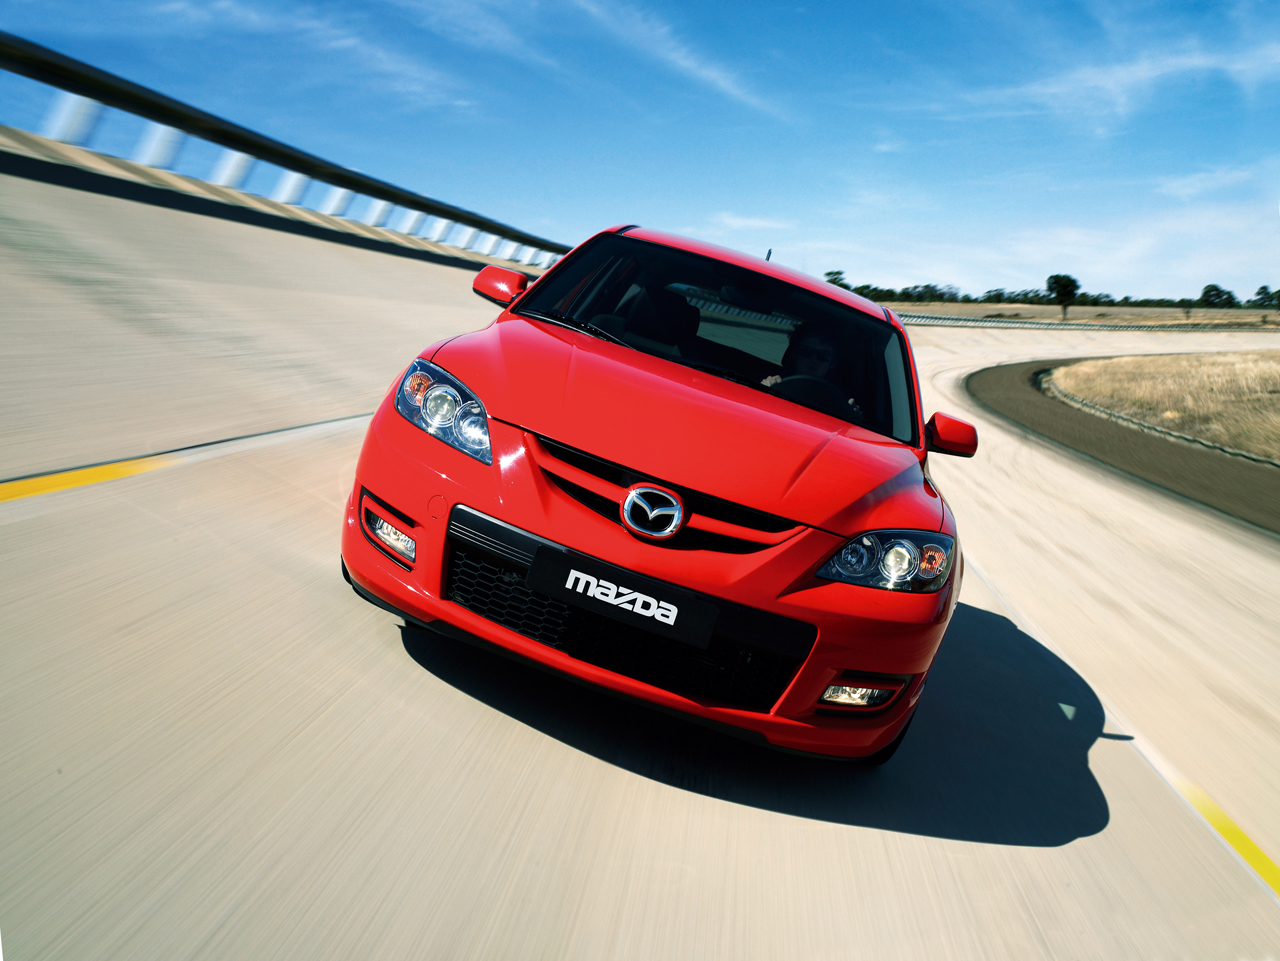 Nové ceny modelů Mazda3 MPS a Mazda MX-5 RC